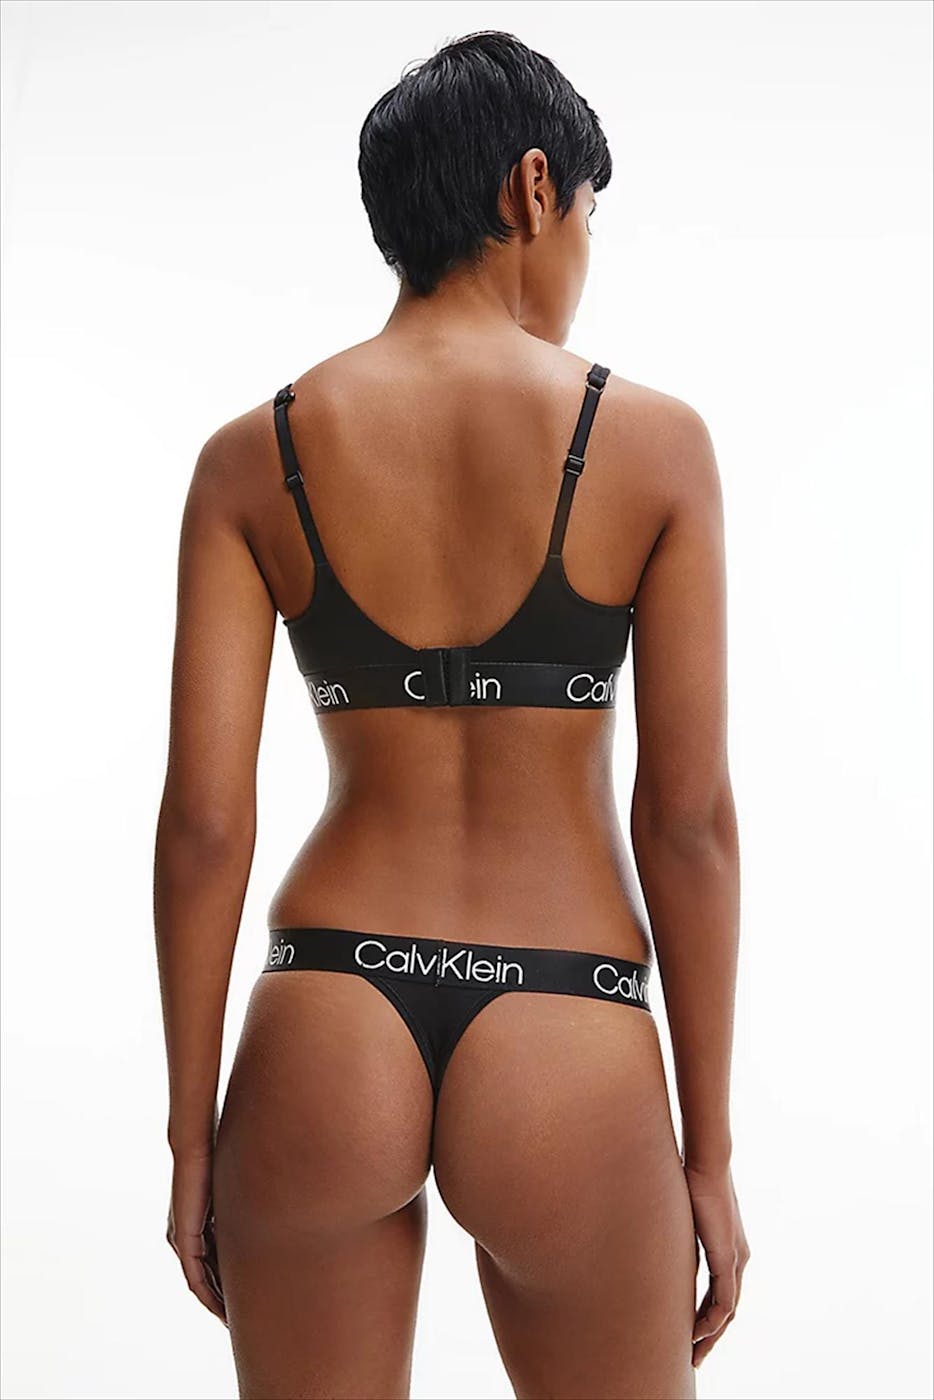 Calvin Klein Underwear - Zwarte Lined Triangle Beha